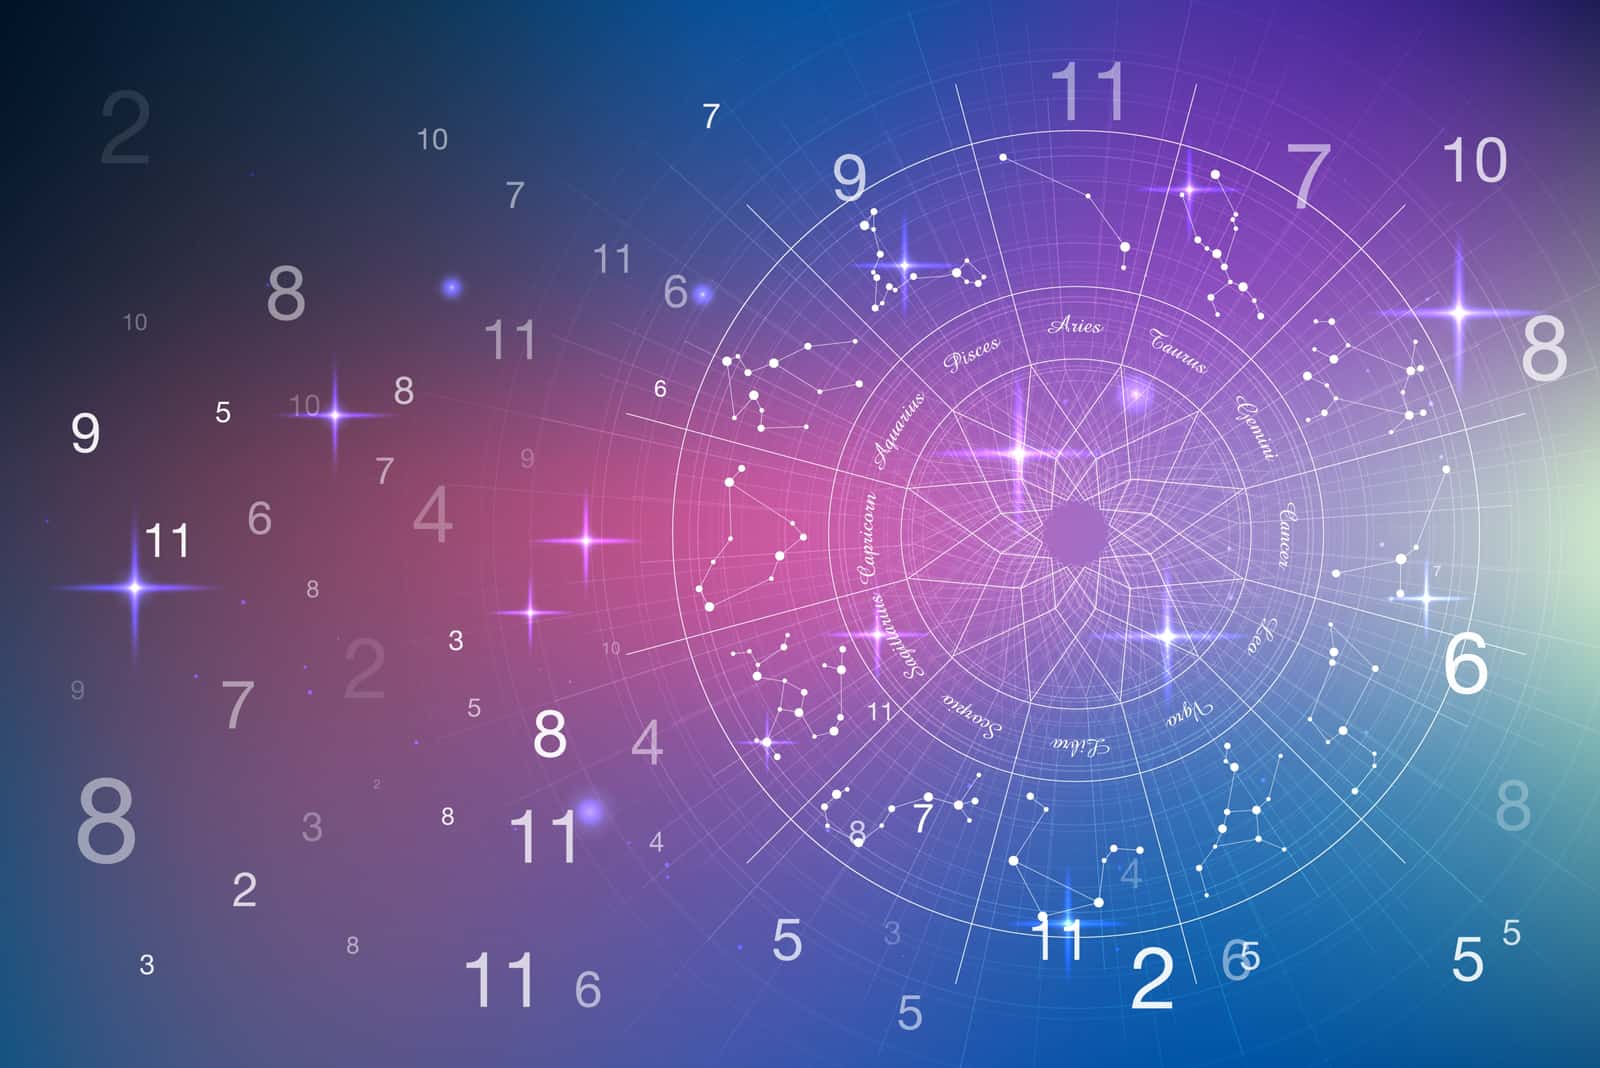 Concepto de astrología y numerología con signos zodiacales y números en el cielo estrellado